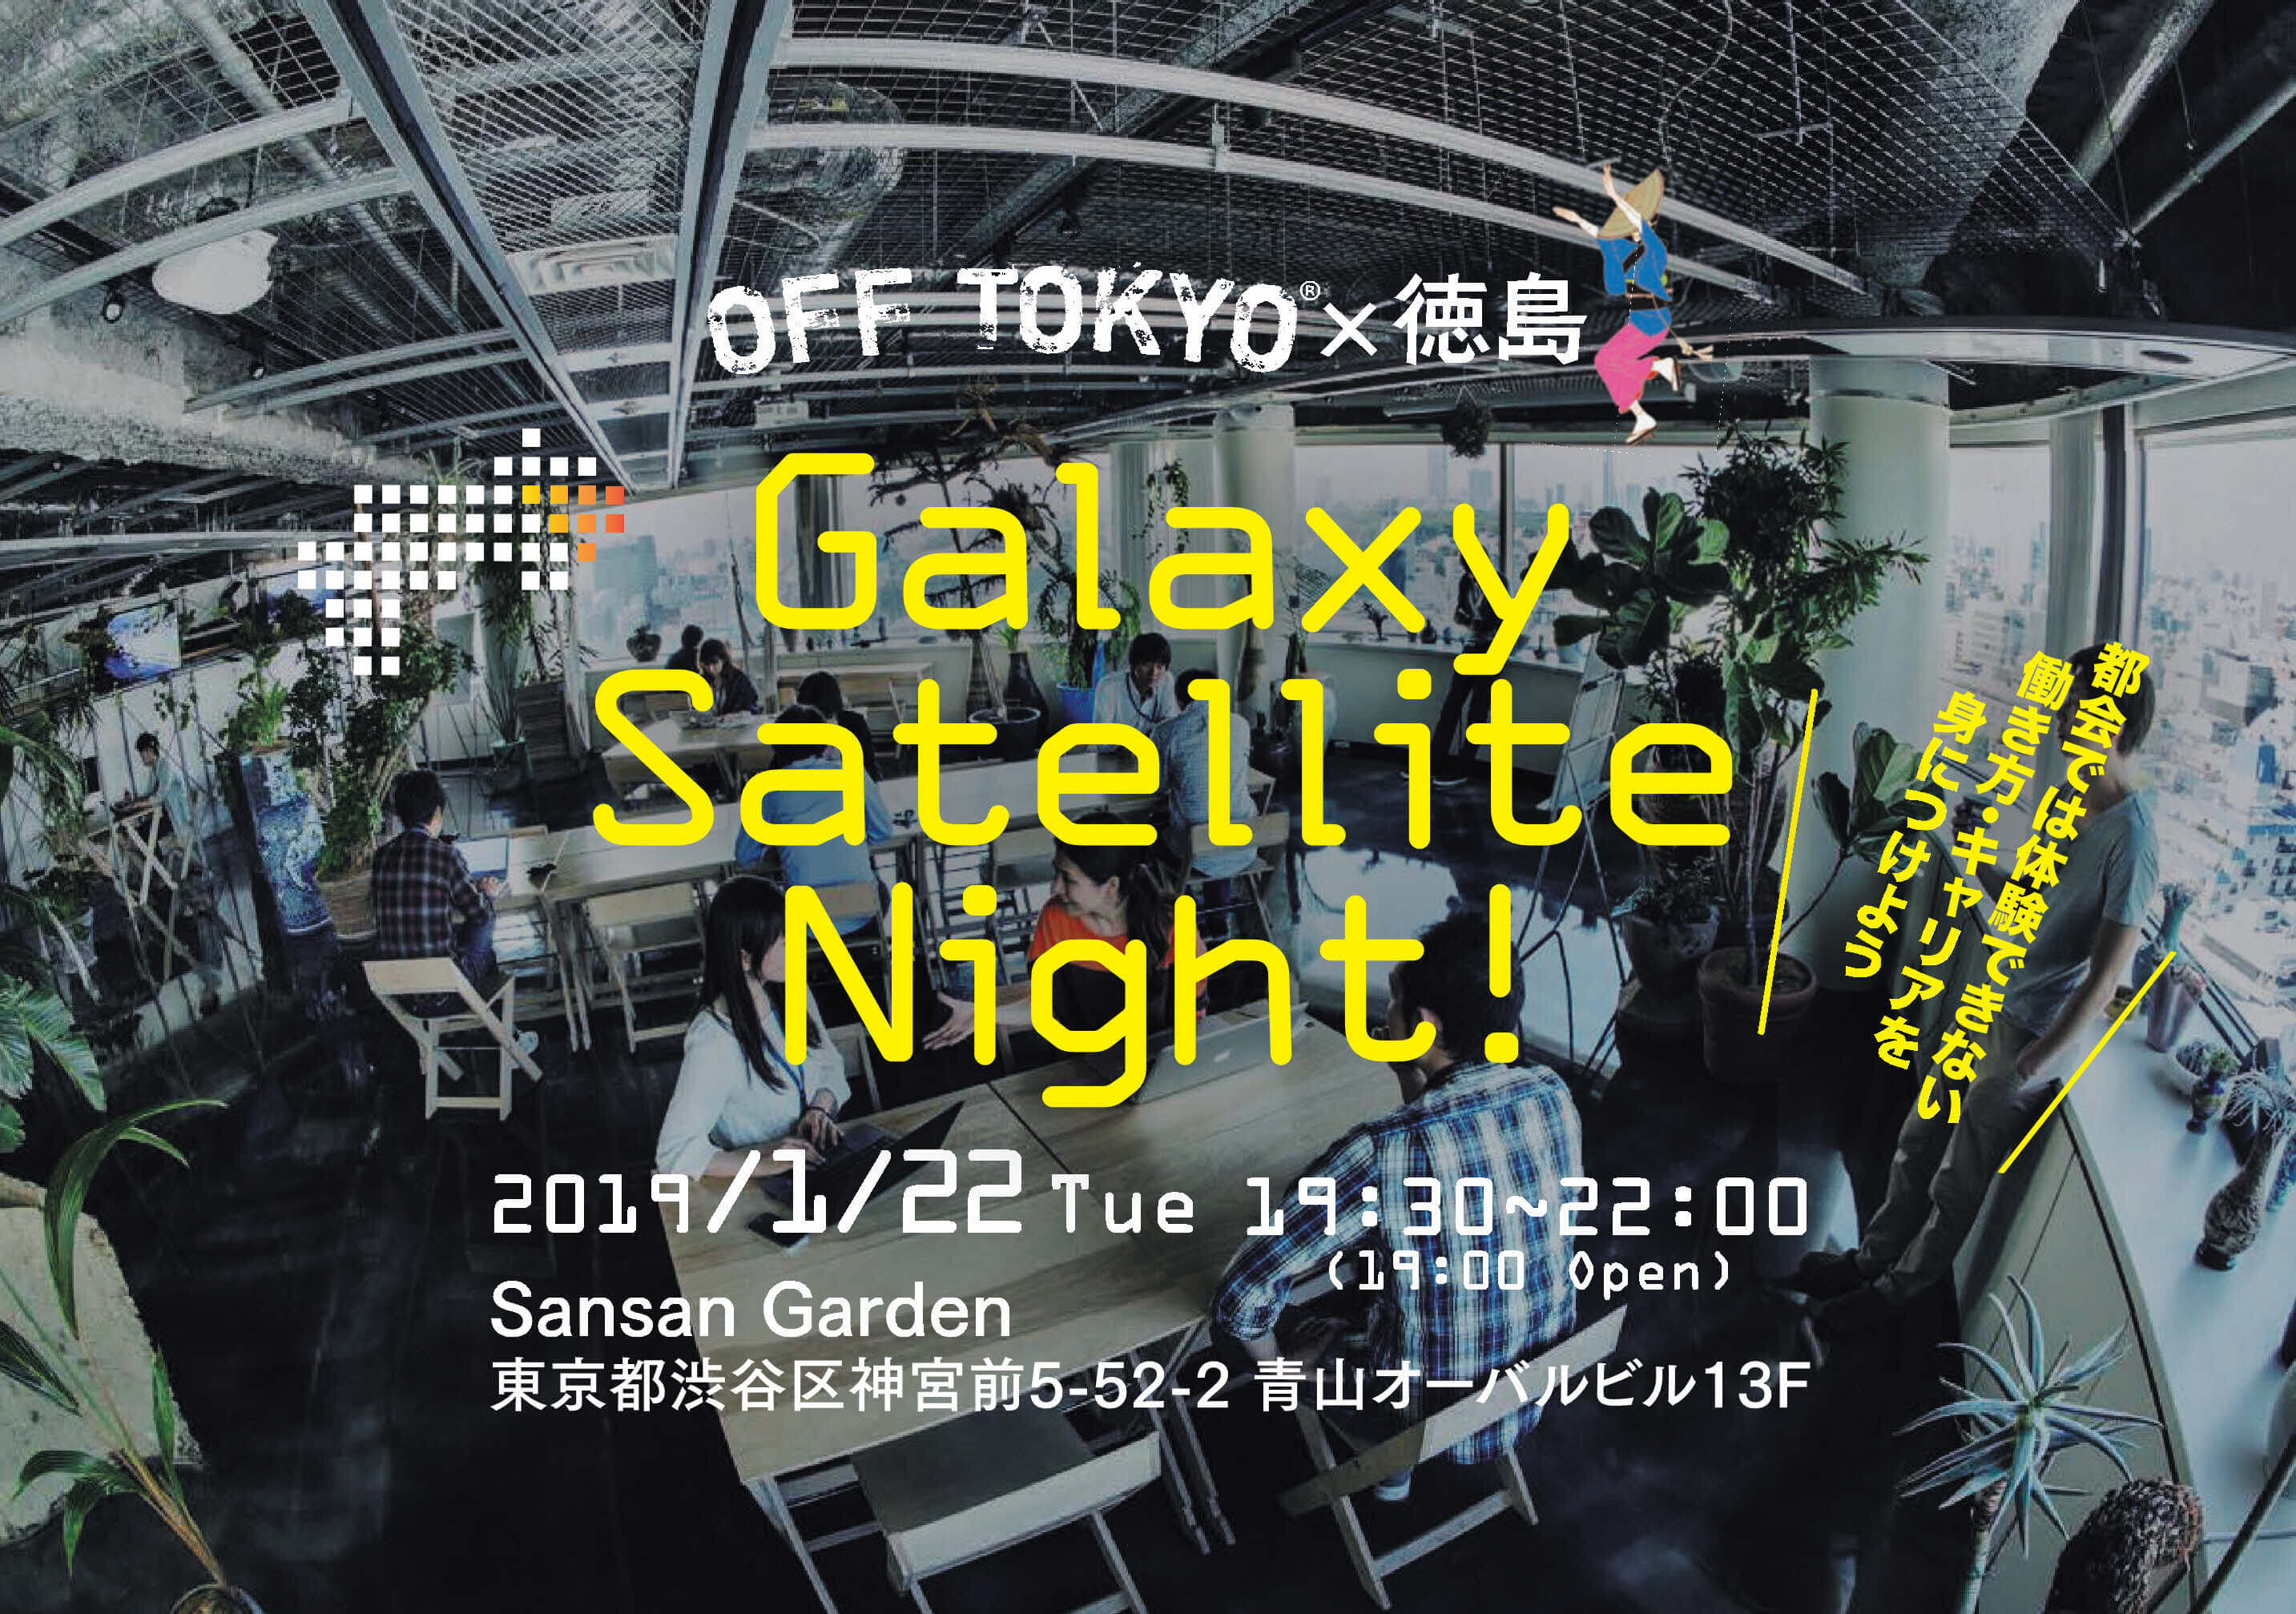 1 22 参加者募集 働き方の最先端エリア 徳島の今を知る Galaxy Satellite Night Off Tokyo 徳島 転職支援サービス いつか徳島